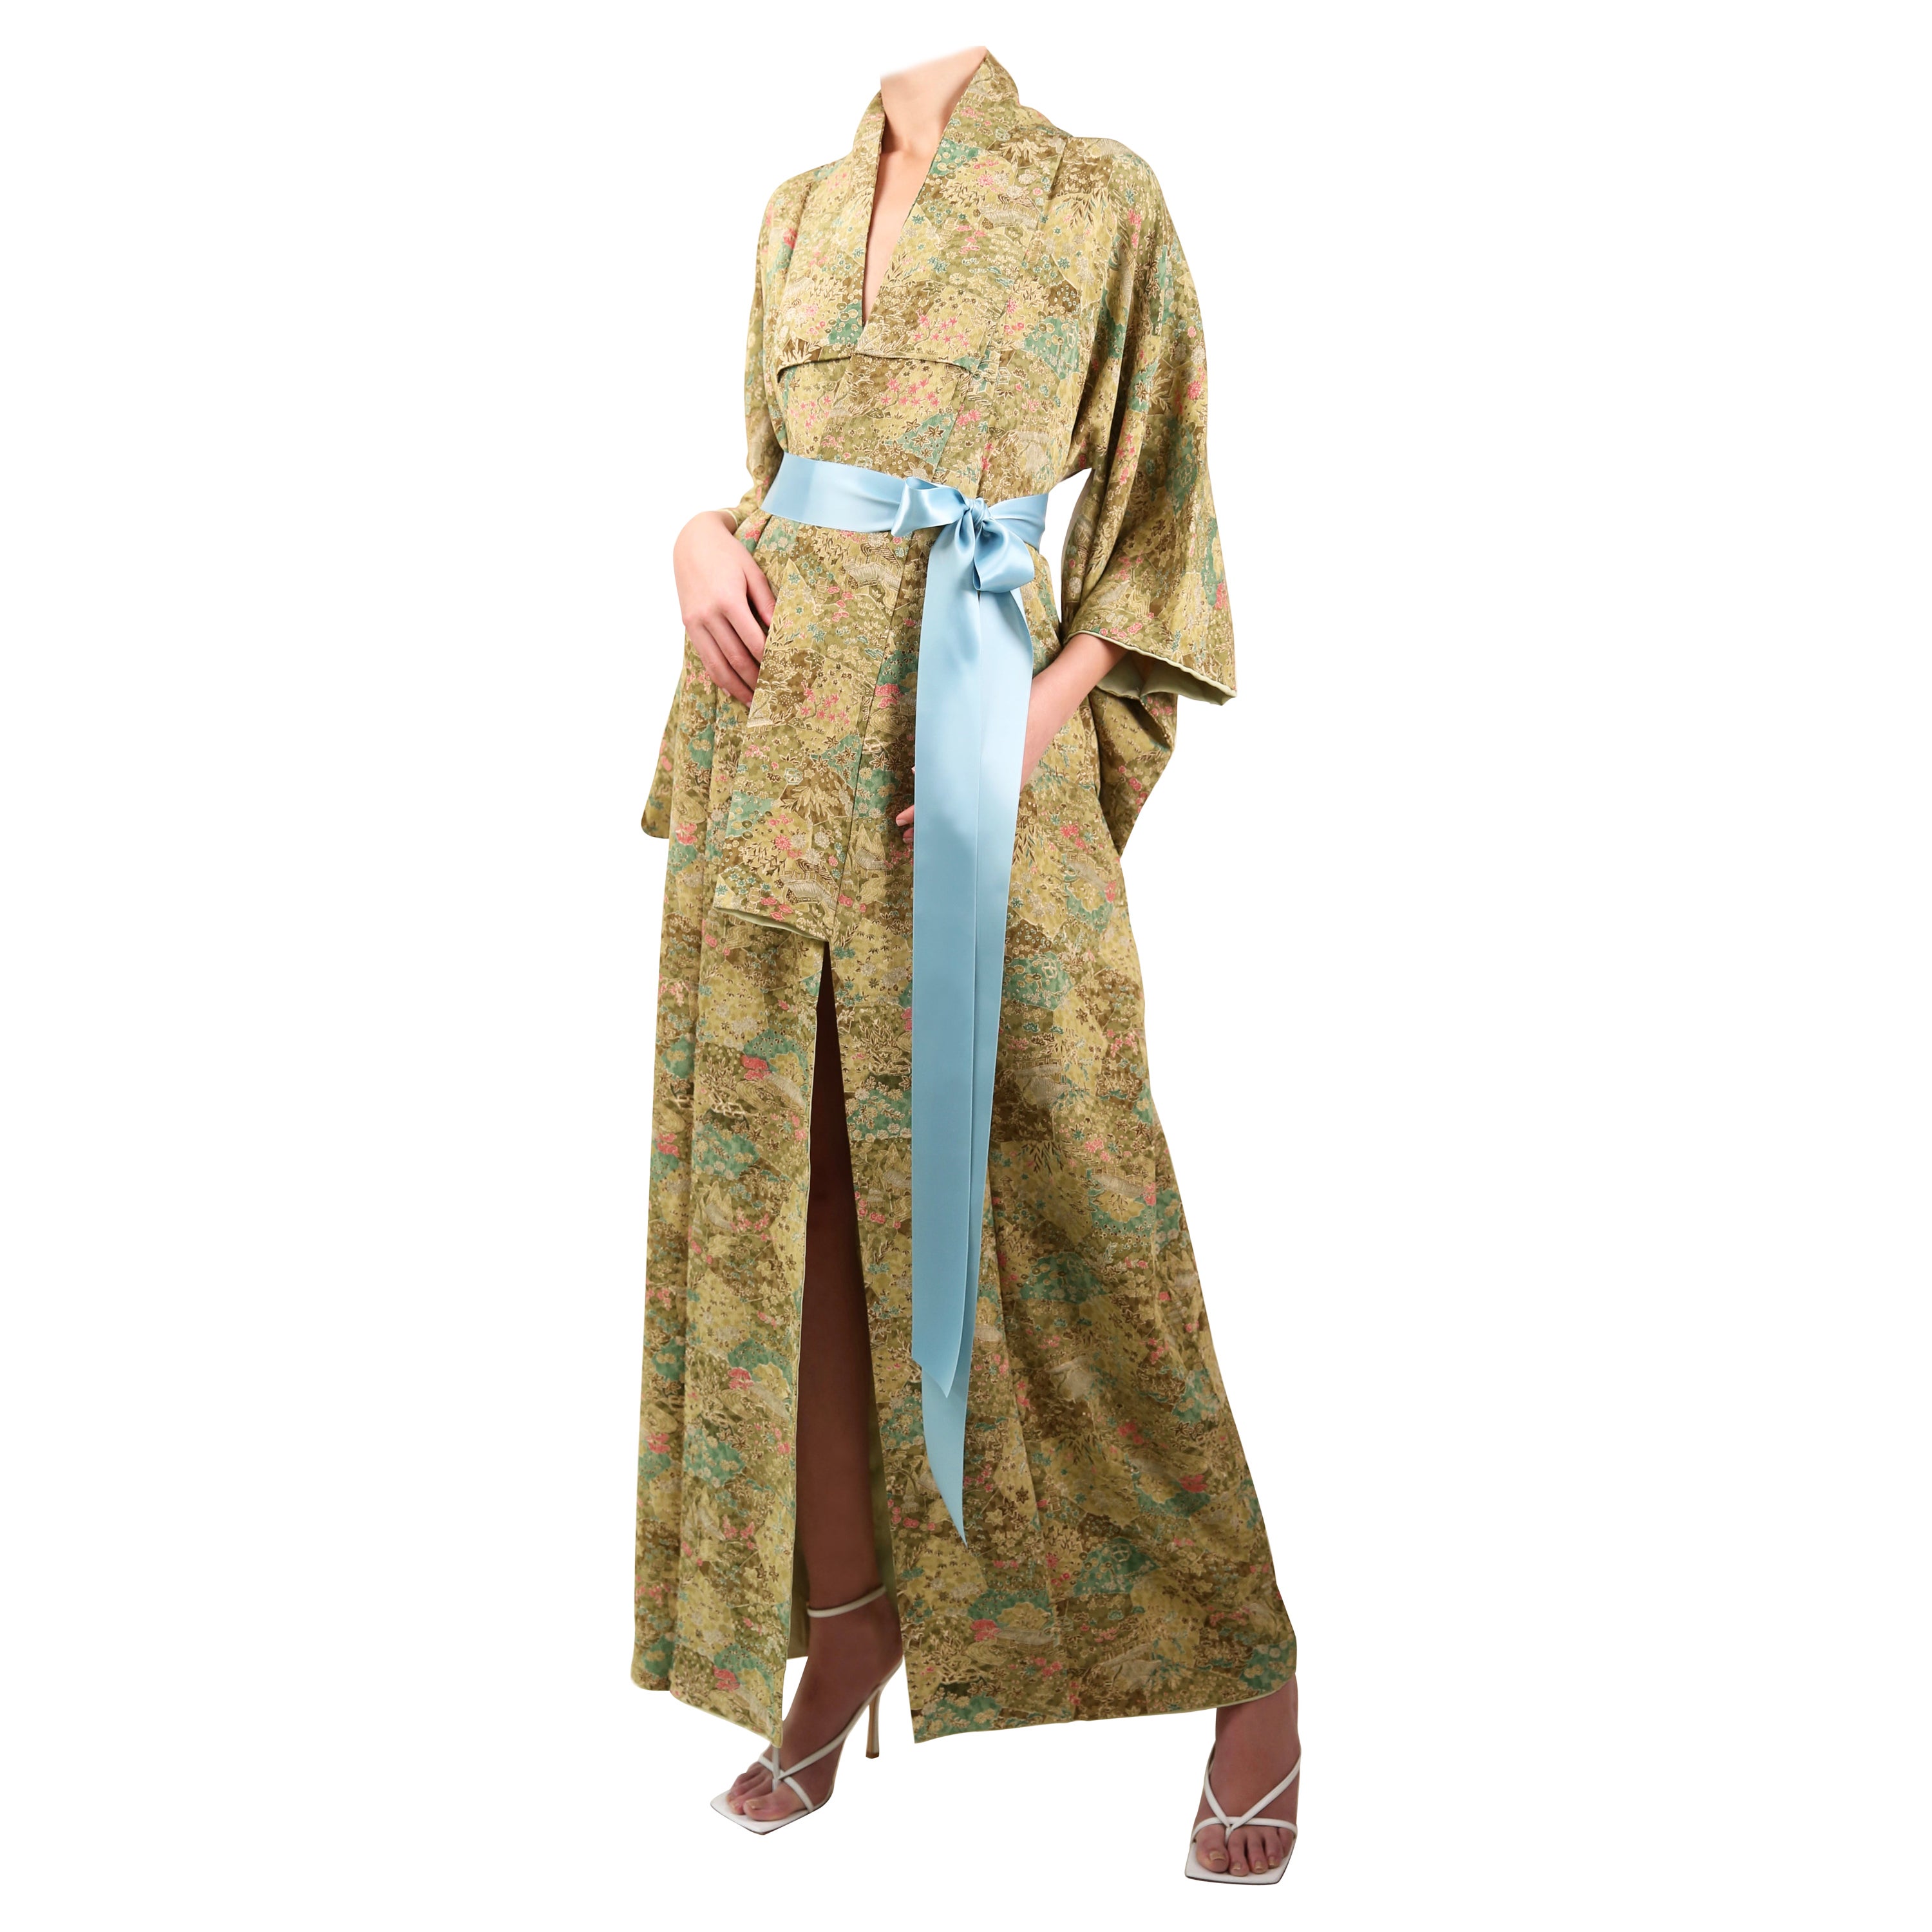 Robe longue kimono vintage japonaise en soie à fleurs vertes sur manteau, fabriquée à la main